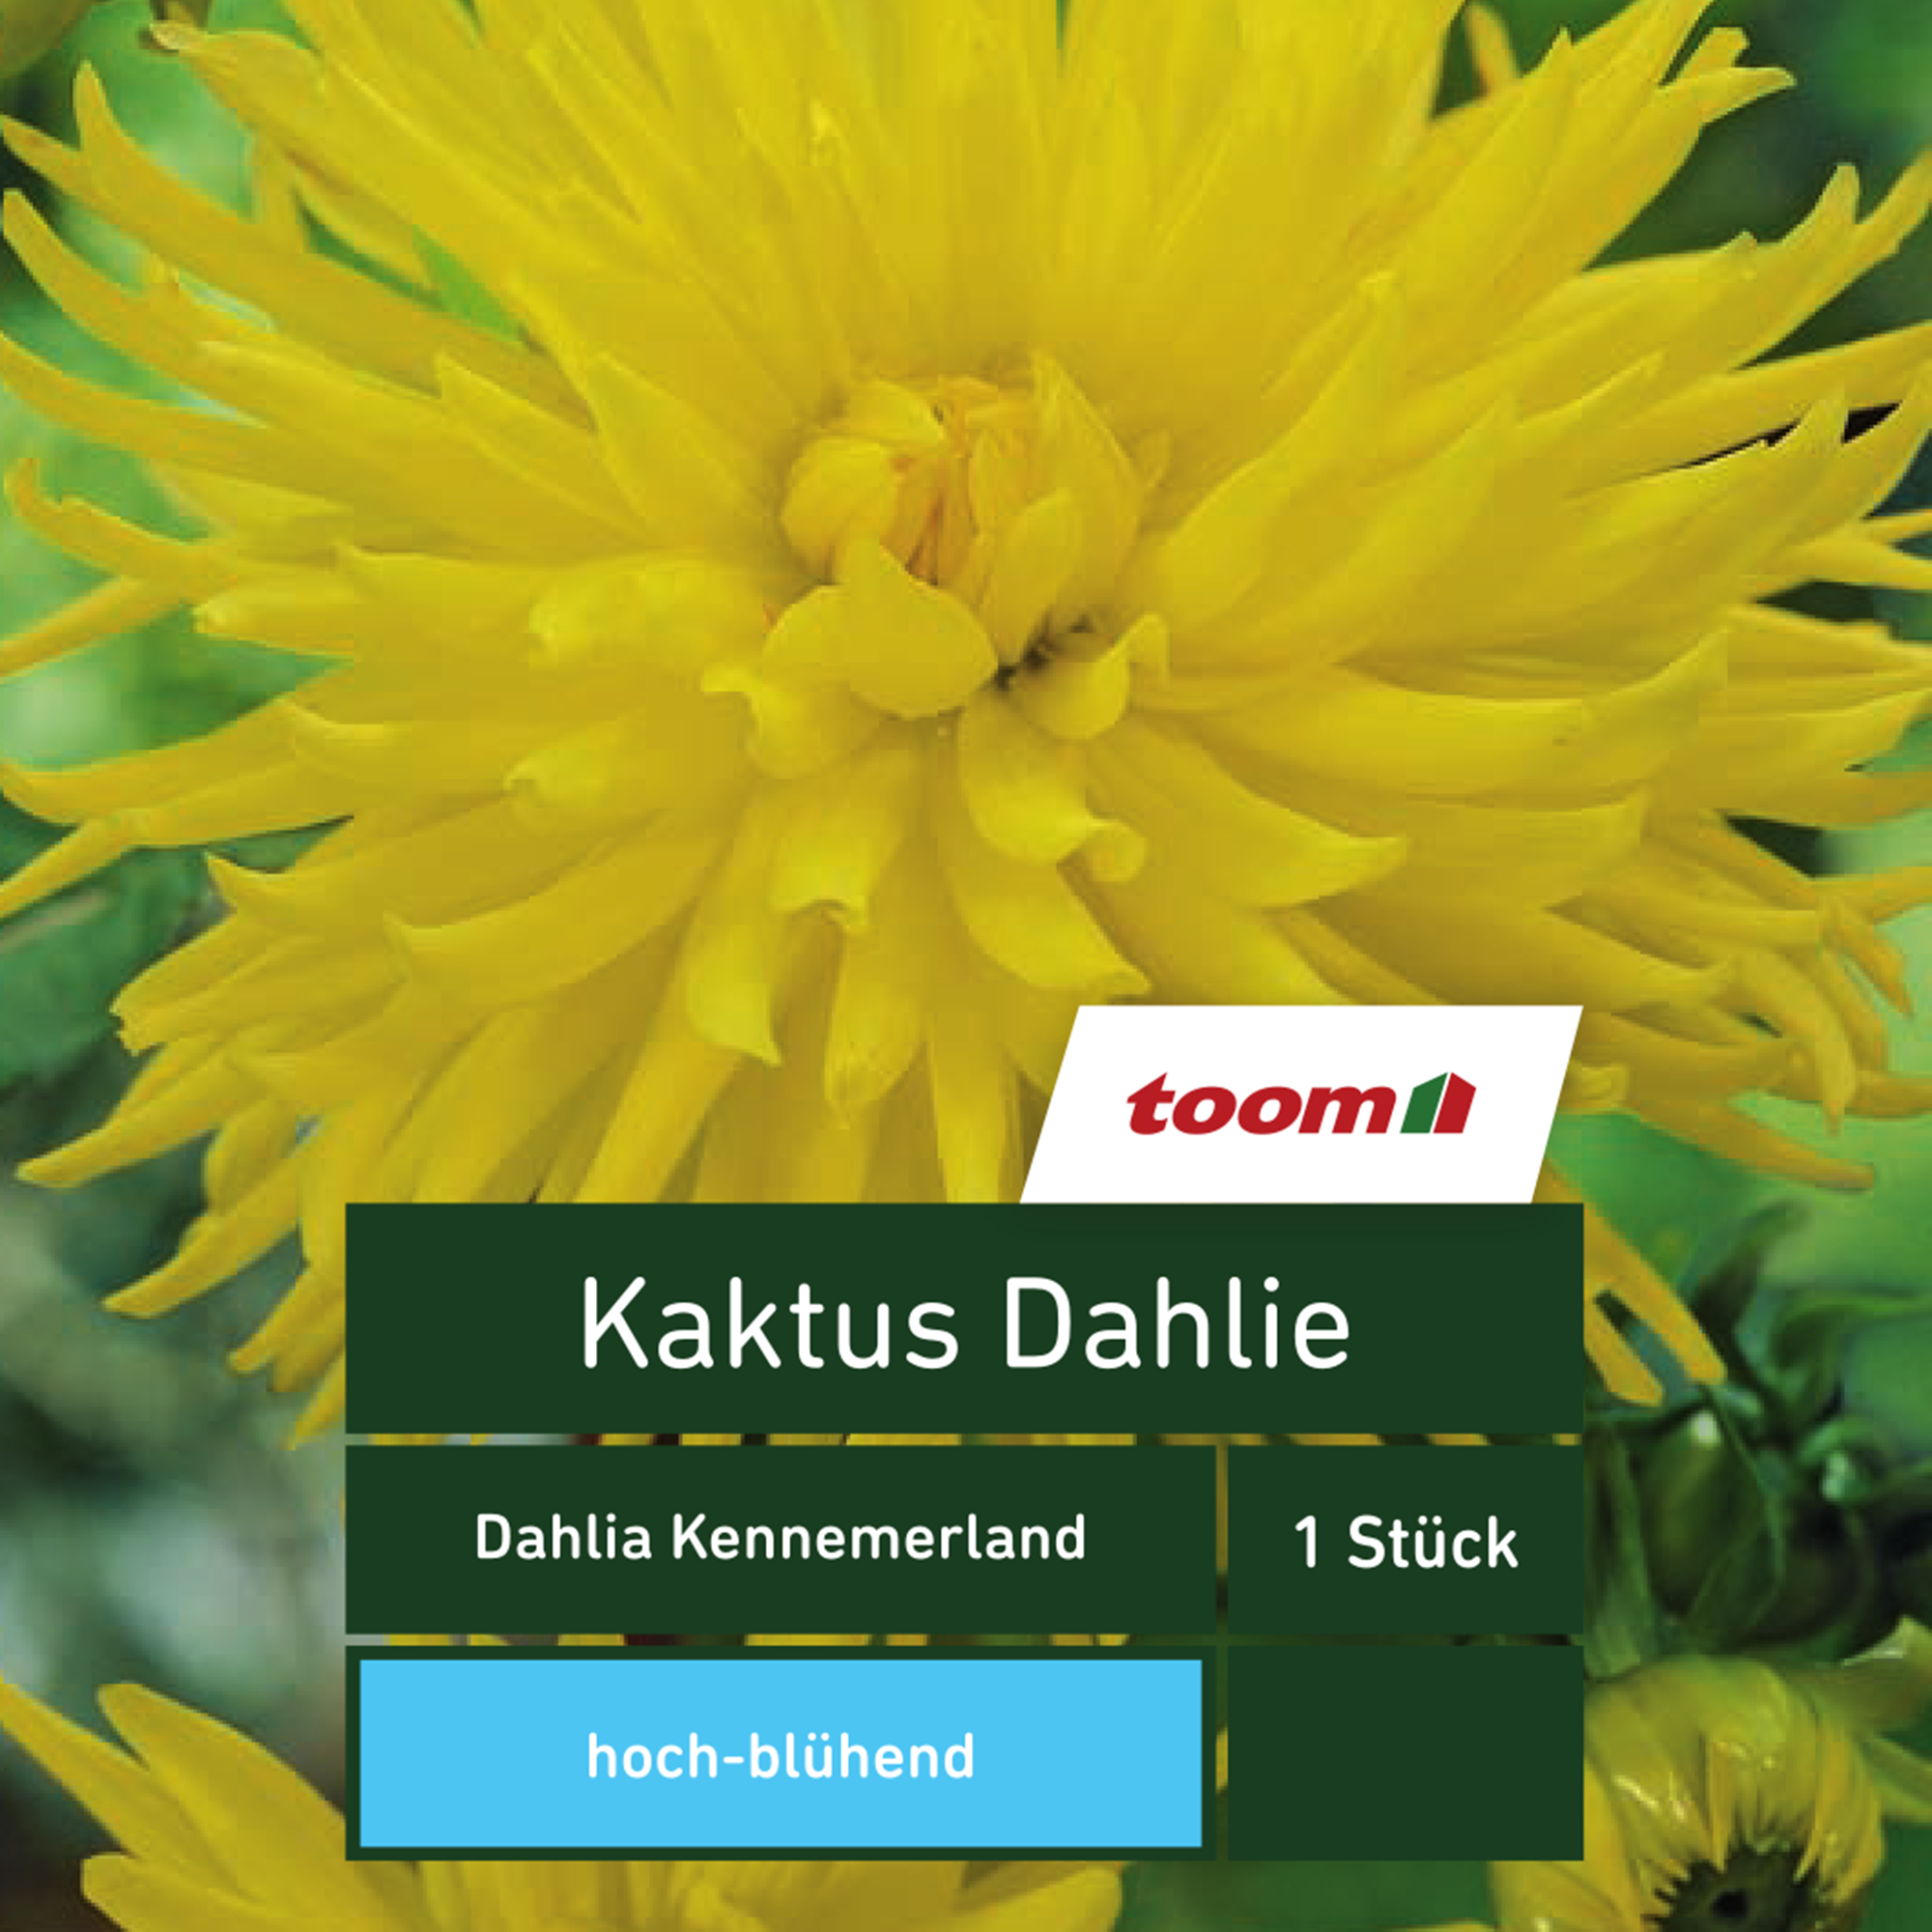 Kaktus-Dahlie 'Dahlia Kennemerland', 1 Stück, gelb + product picture